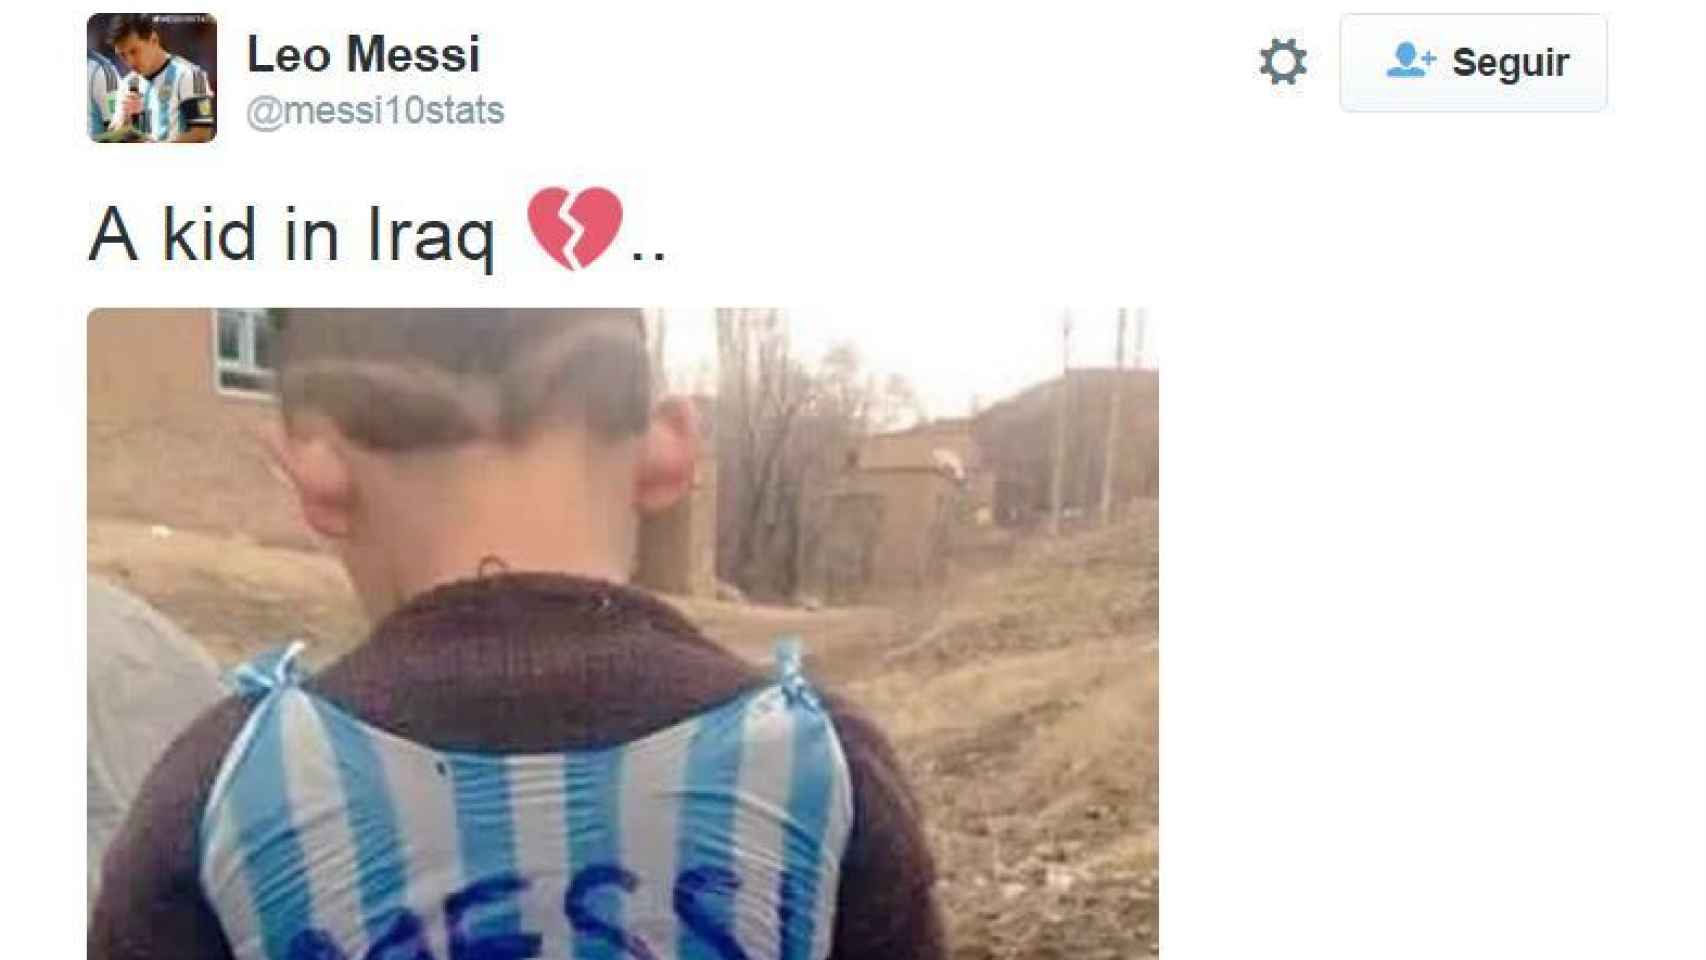 El tuit de los fans de Messi que desencadenó la búsqueda del niño.